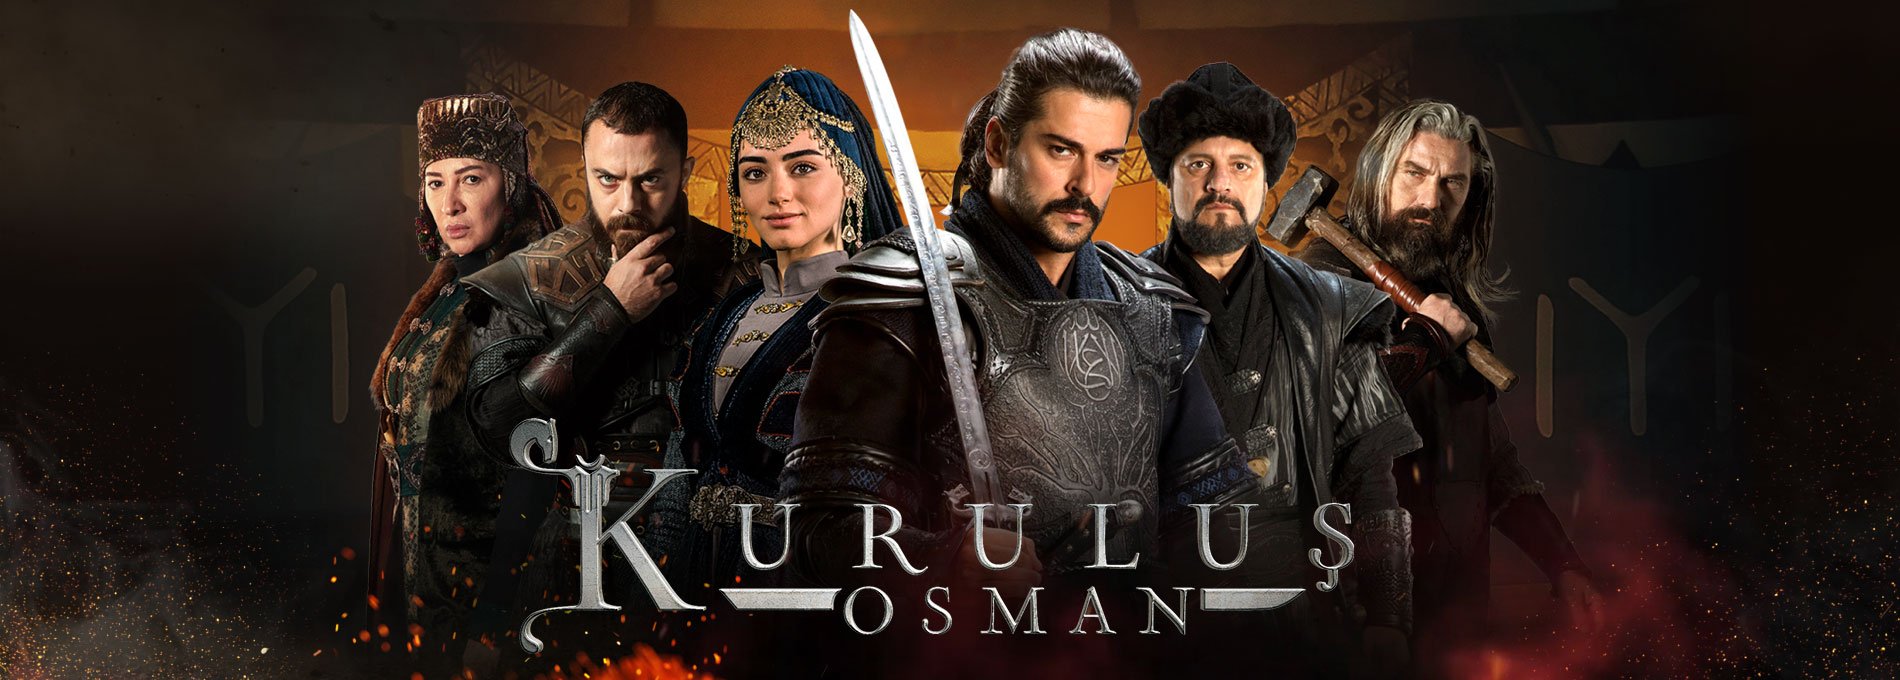 Kurulus Osman Episode, Kurulus Osman Drama Cast, Kurulus Osman Schedule, Kurulus  Osman OST